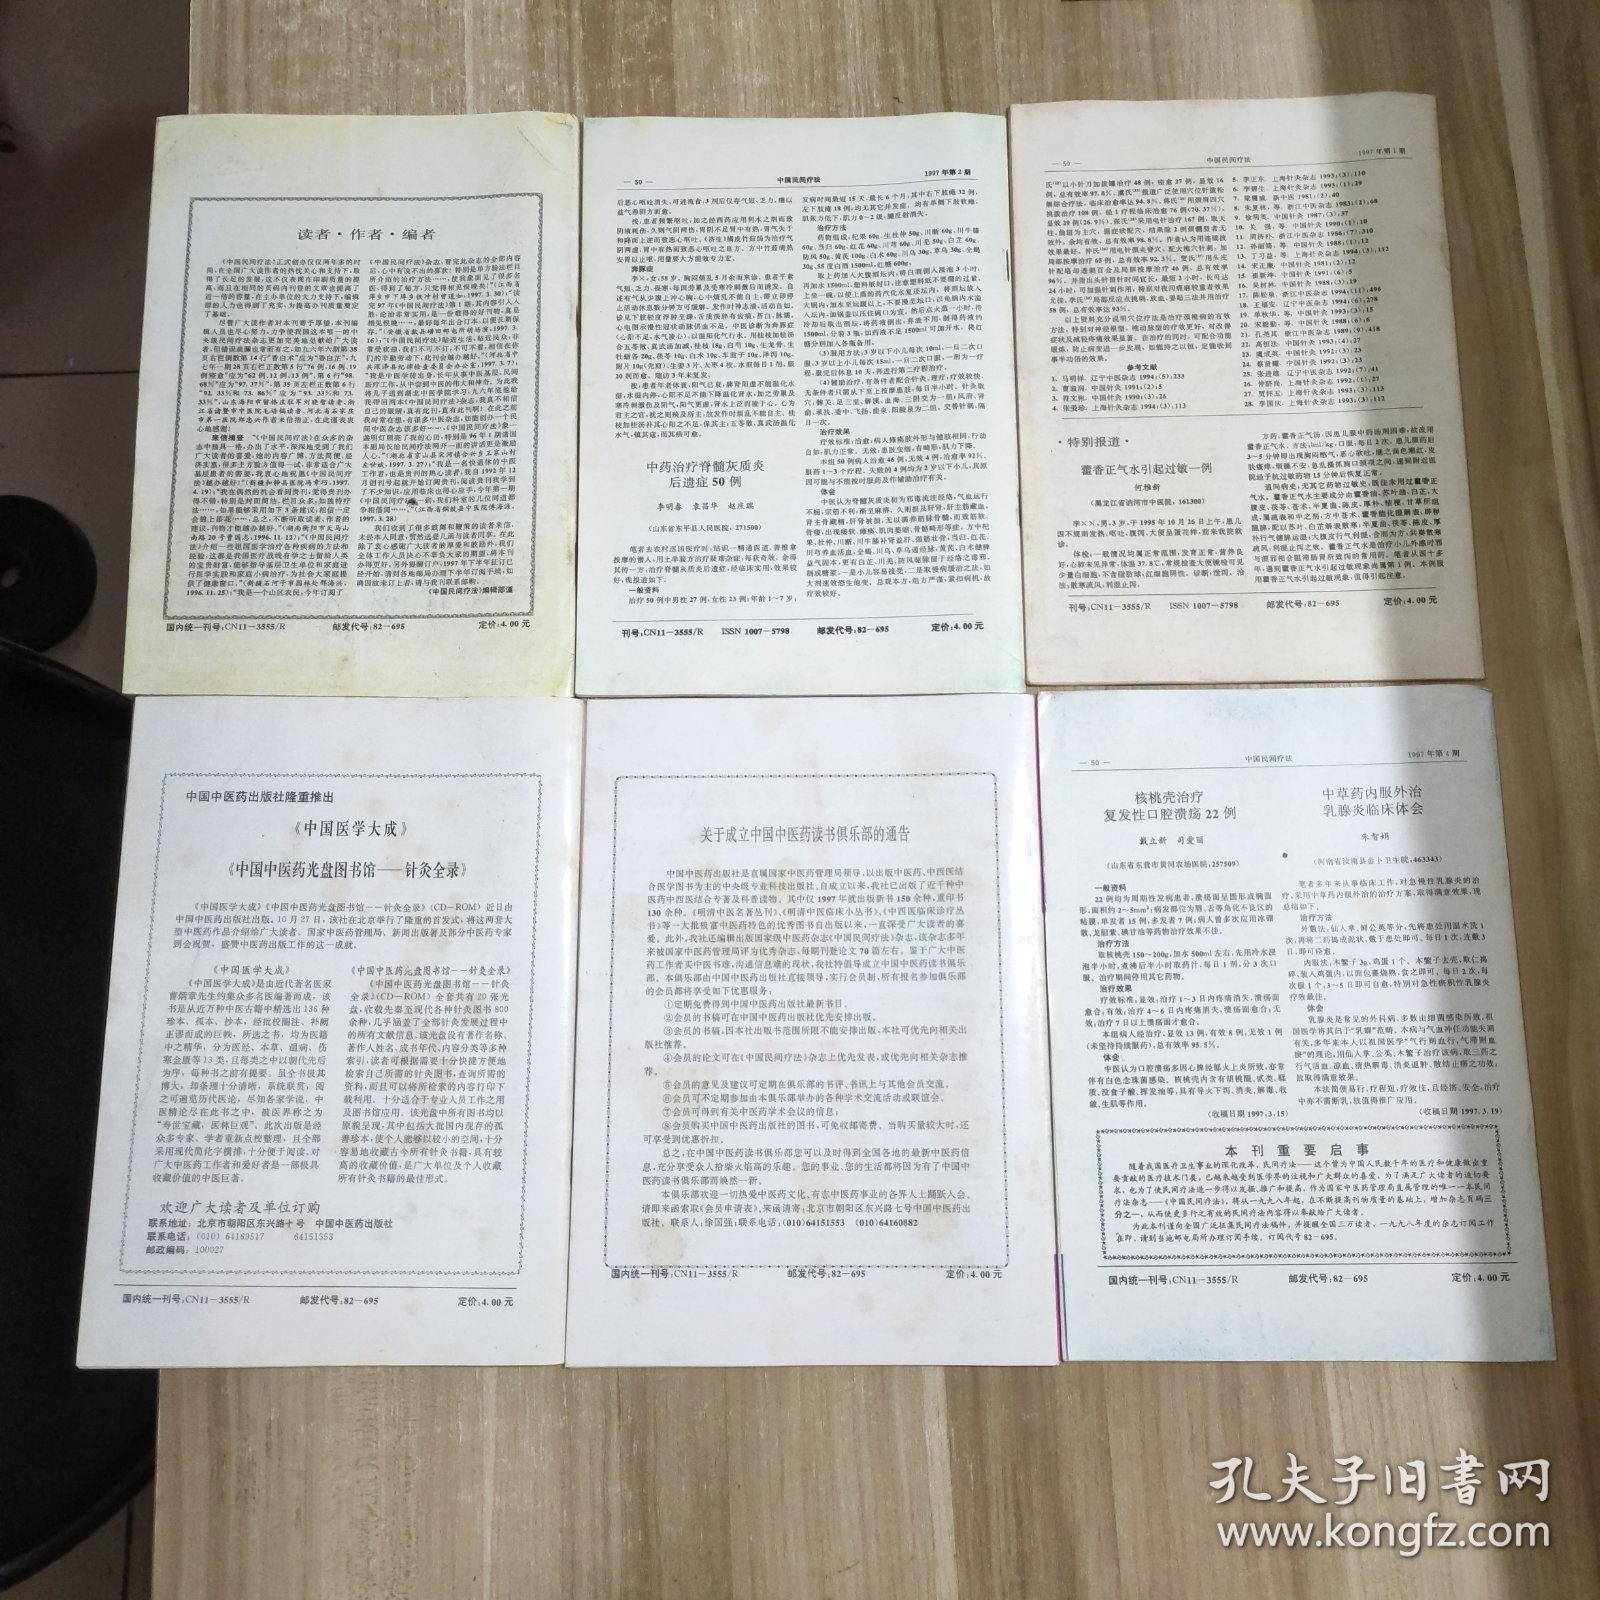 中国民间疗法 (1997年 第1、2、3、4、5、6期 + 1999年 第7卷 第1、2、3、4、5、6、7、8期 + 2000年 第8卷 第1-12期）(26本合售)